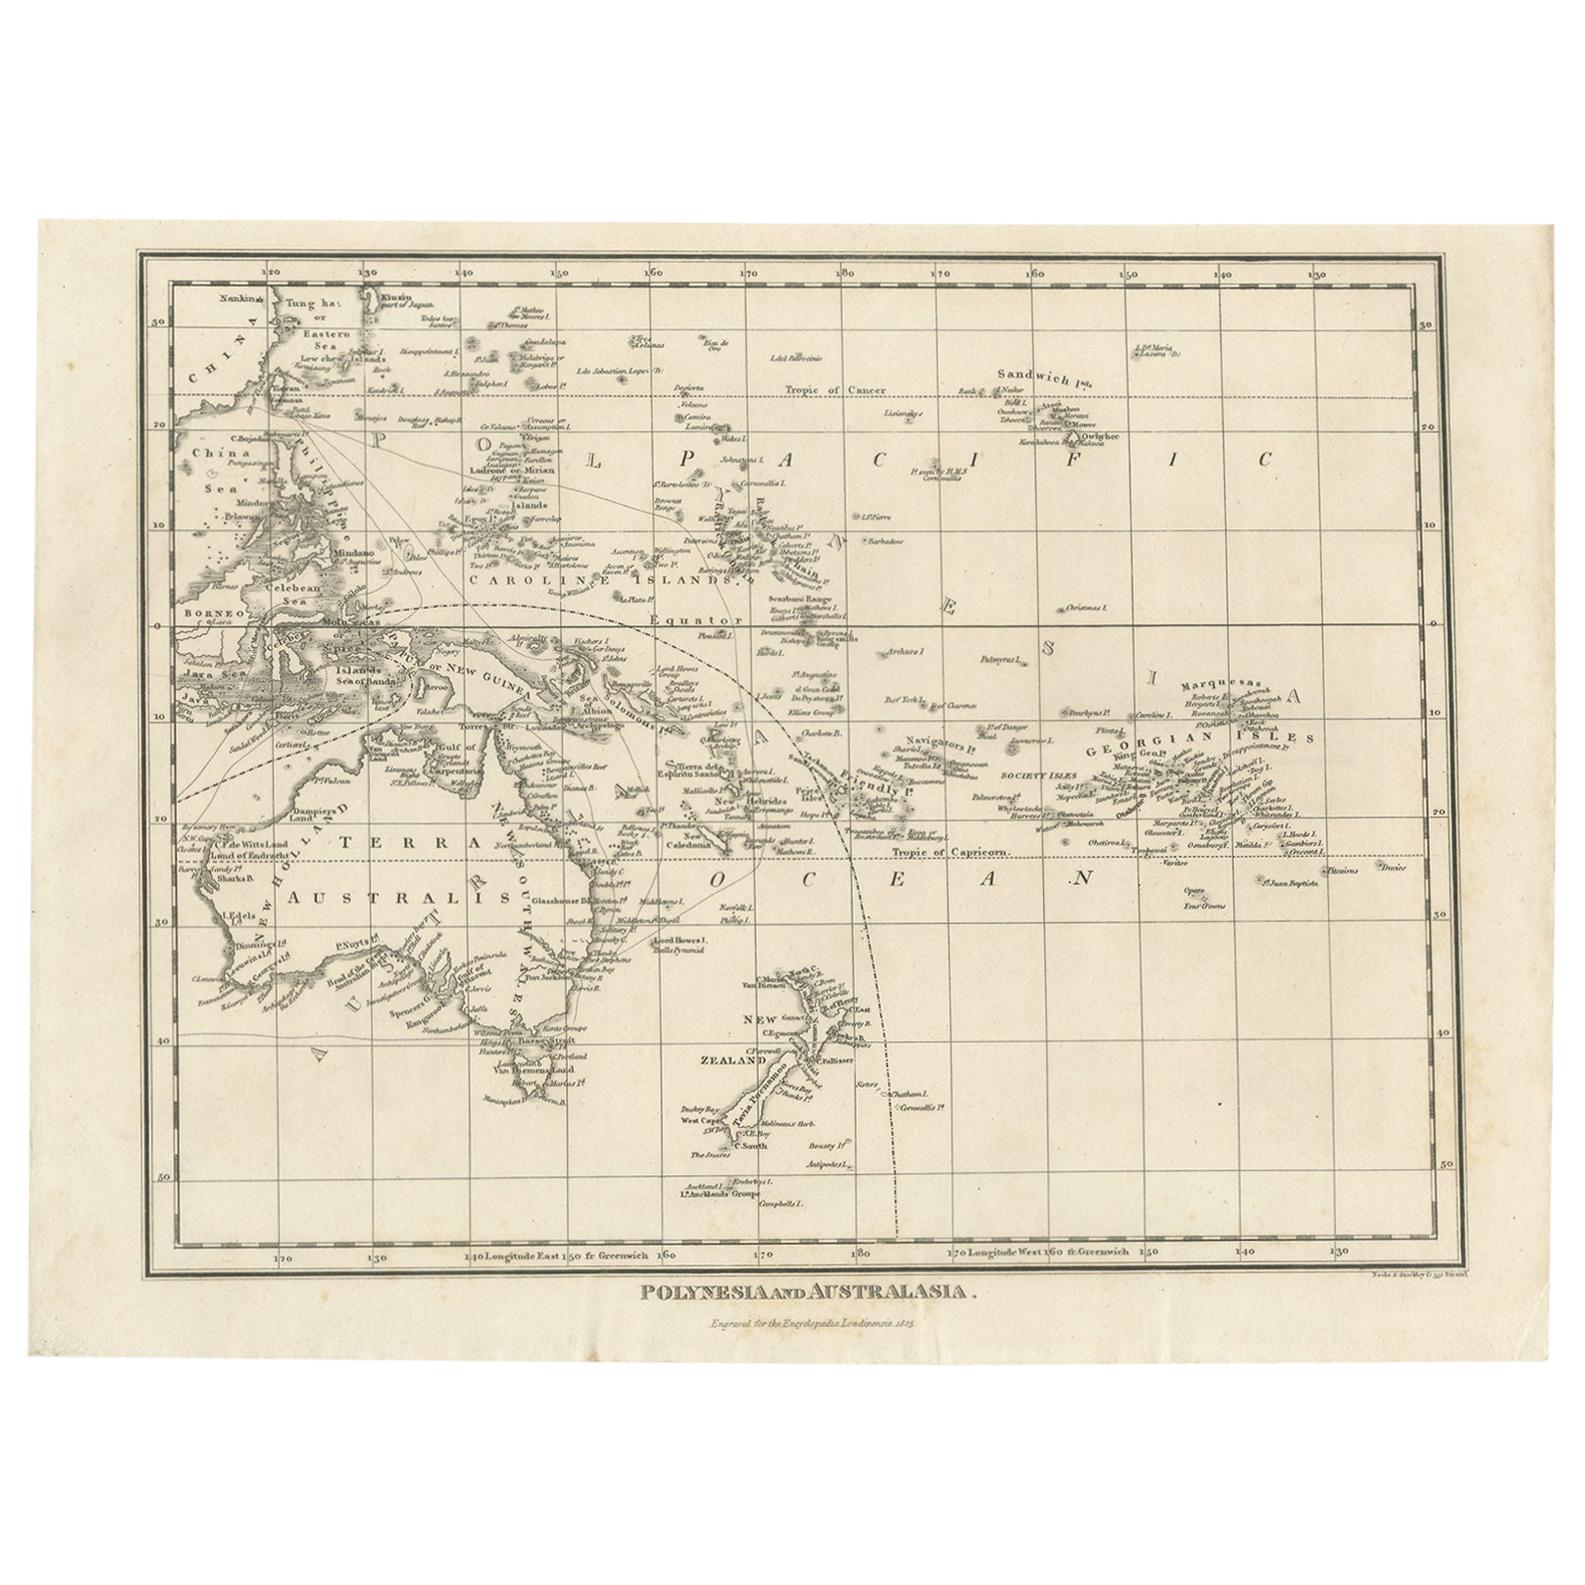 Carte ancienne de la Polynésie et de la région de l'Australie par Neele, 1825